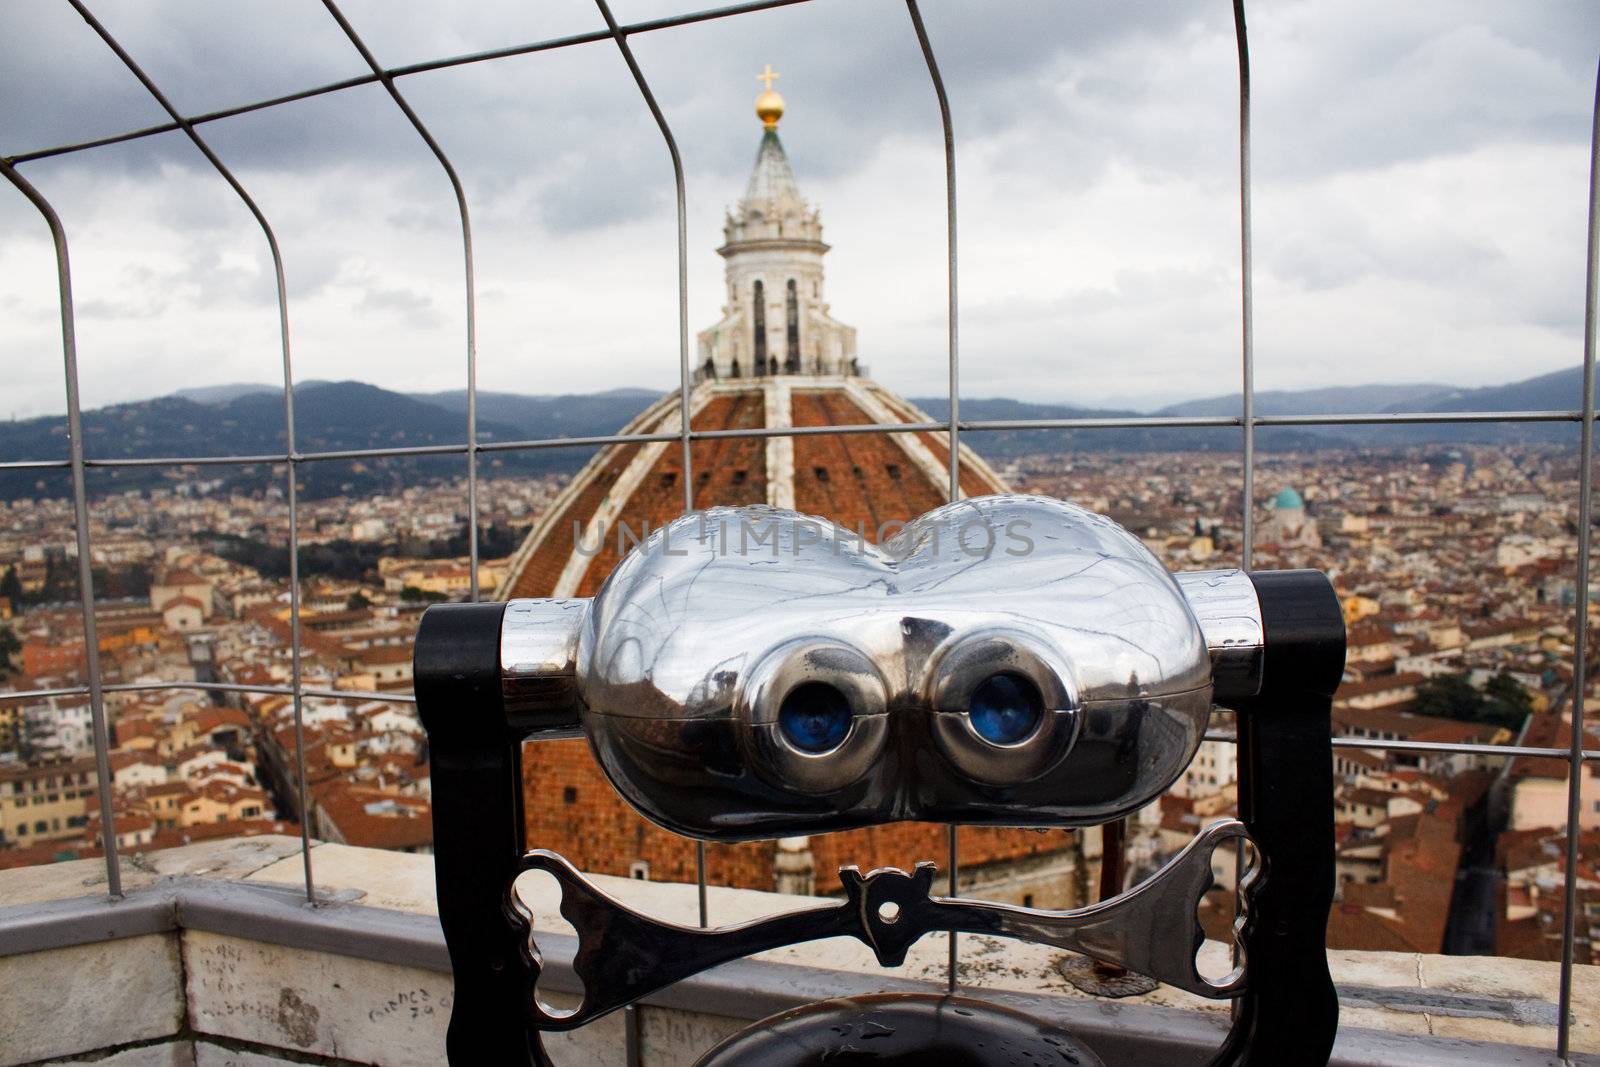 The dome of Florence. santa maria del fiore and campanile of Giotto 